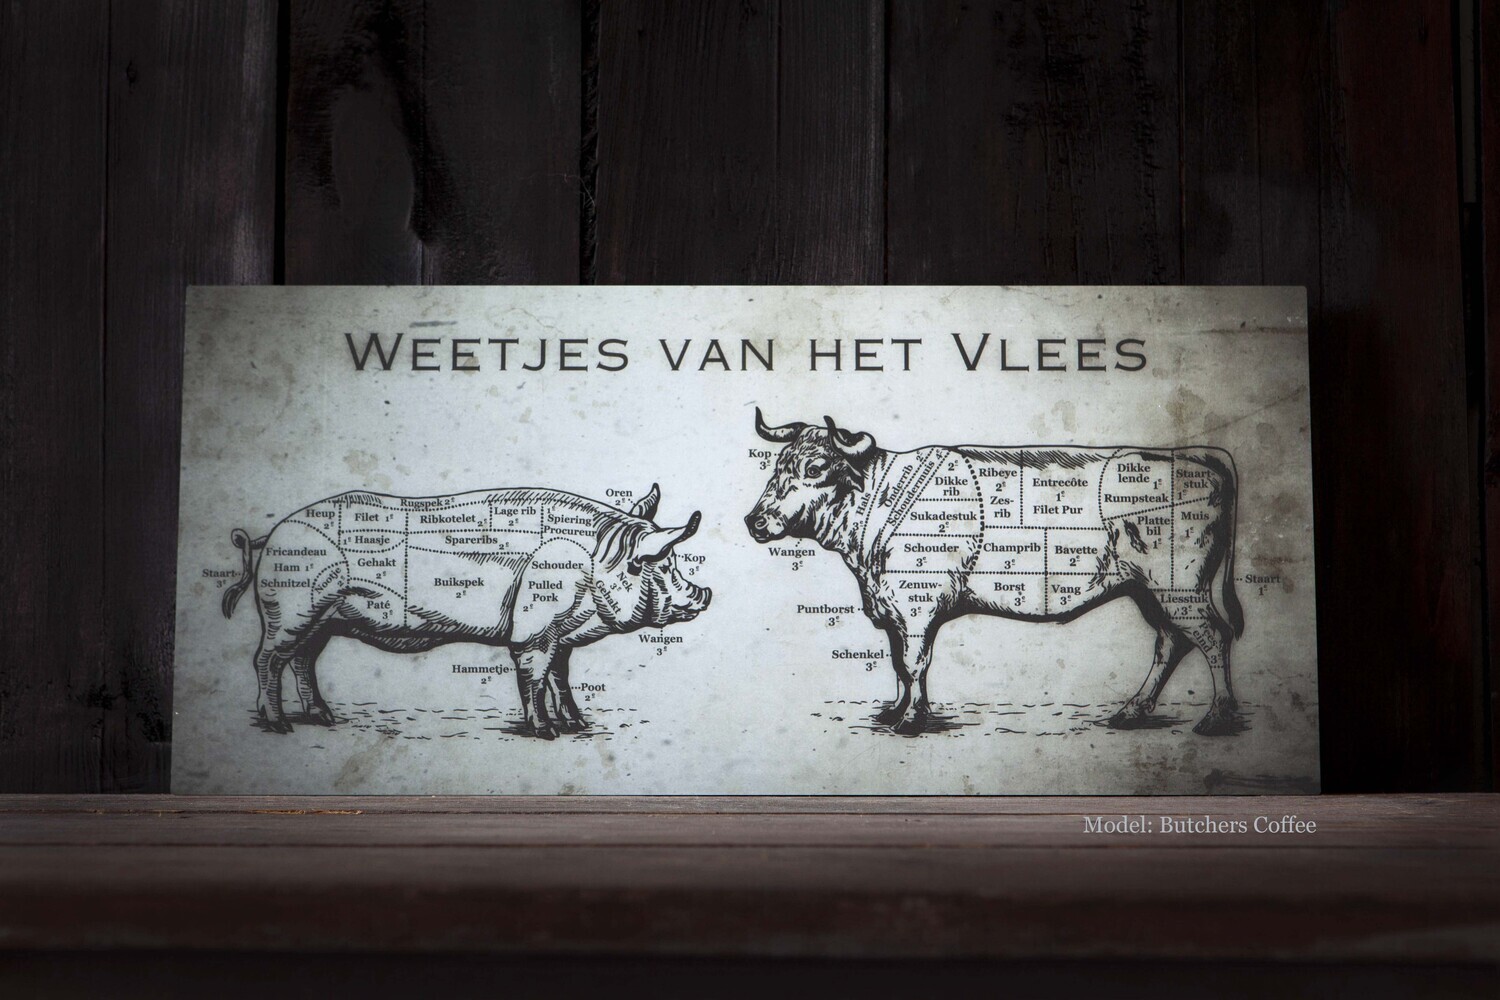 Weetjes van het Vlees Butchers Coffee 'Vlaamse versie'